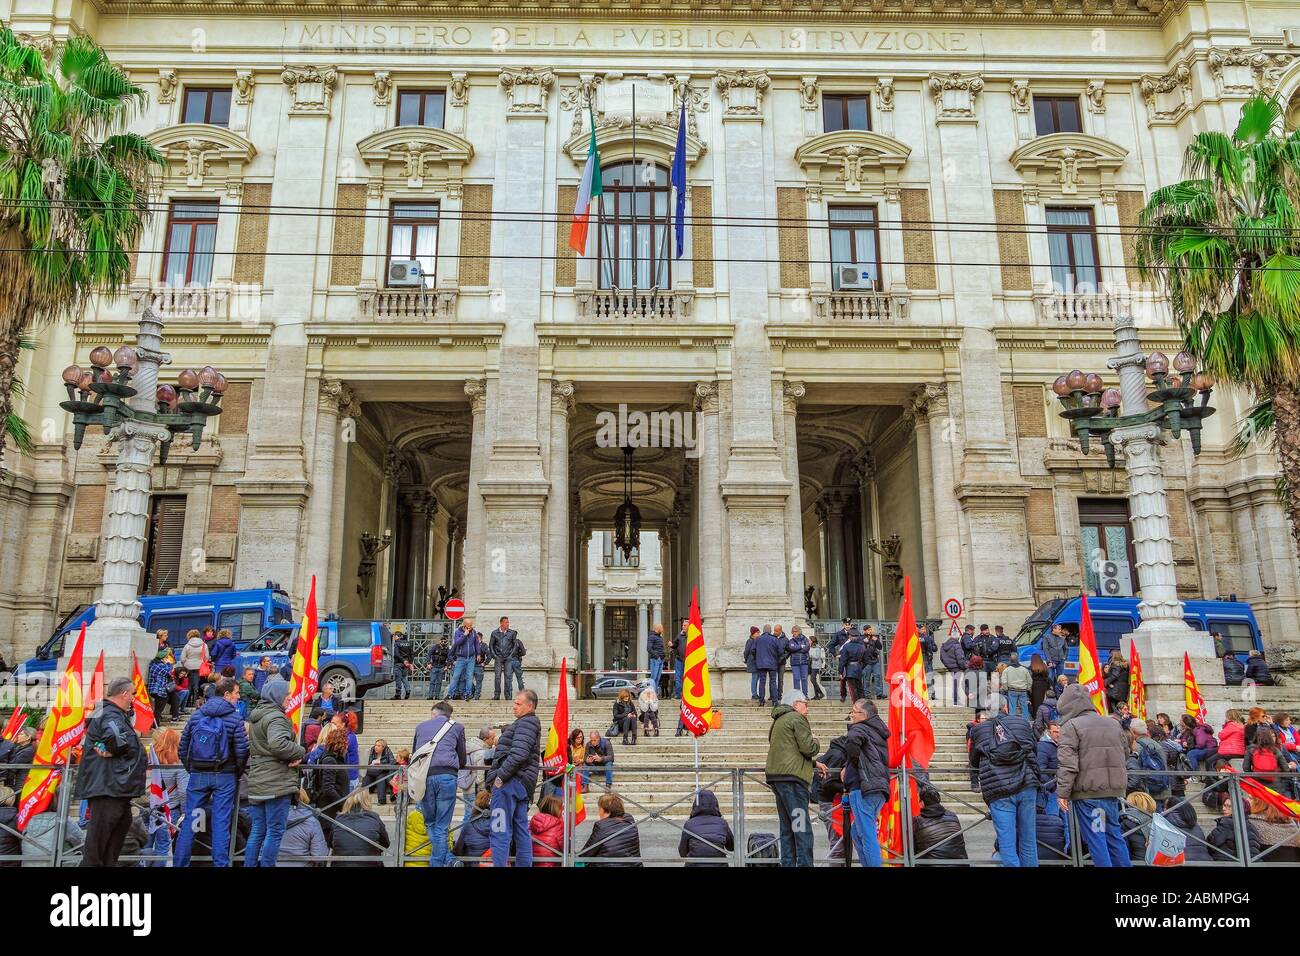 Rome, Italie grande foule des Italiens qui protestaient devant tranquillement Ministero dell Istruzione, ministère du gouvernement italien, en vertu de la présence policière. Banque D'Images